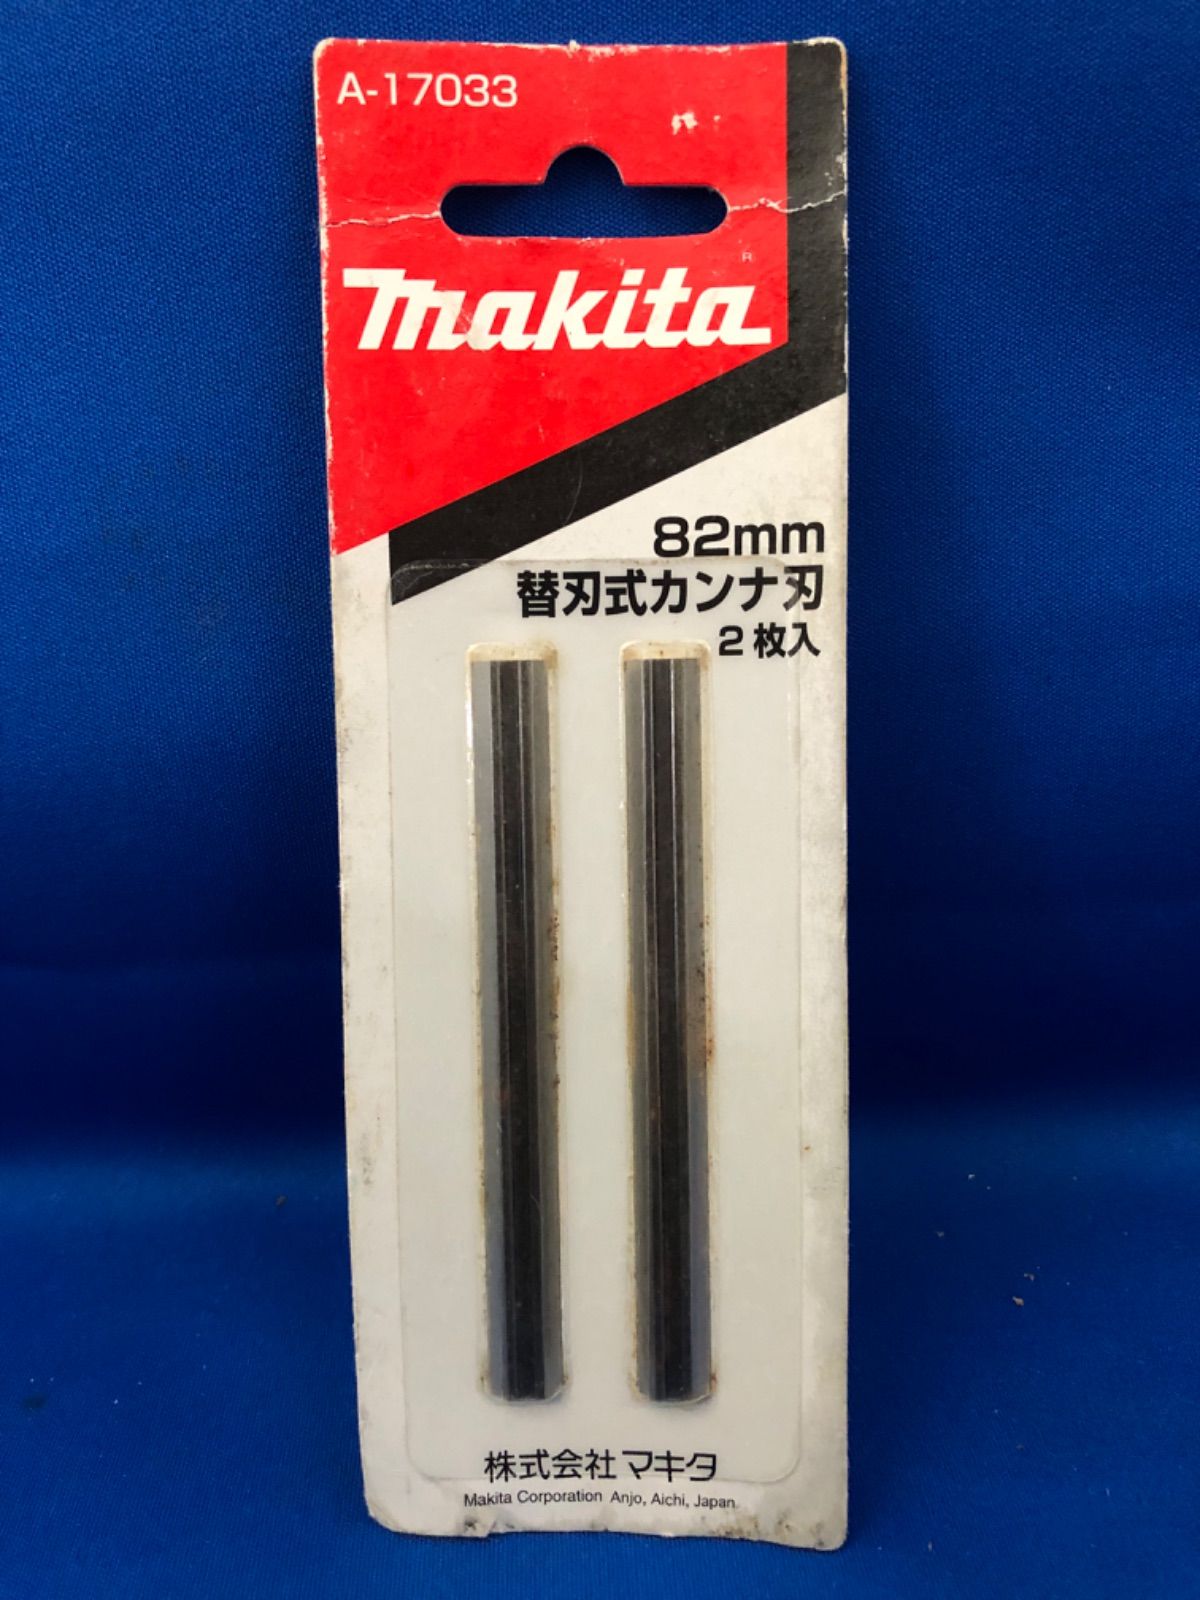 マキタ(Makita) カンナ刃320(2入) A-17310 - 電動工具パーツ・アクセサリ